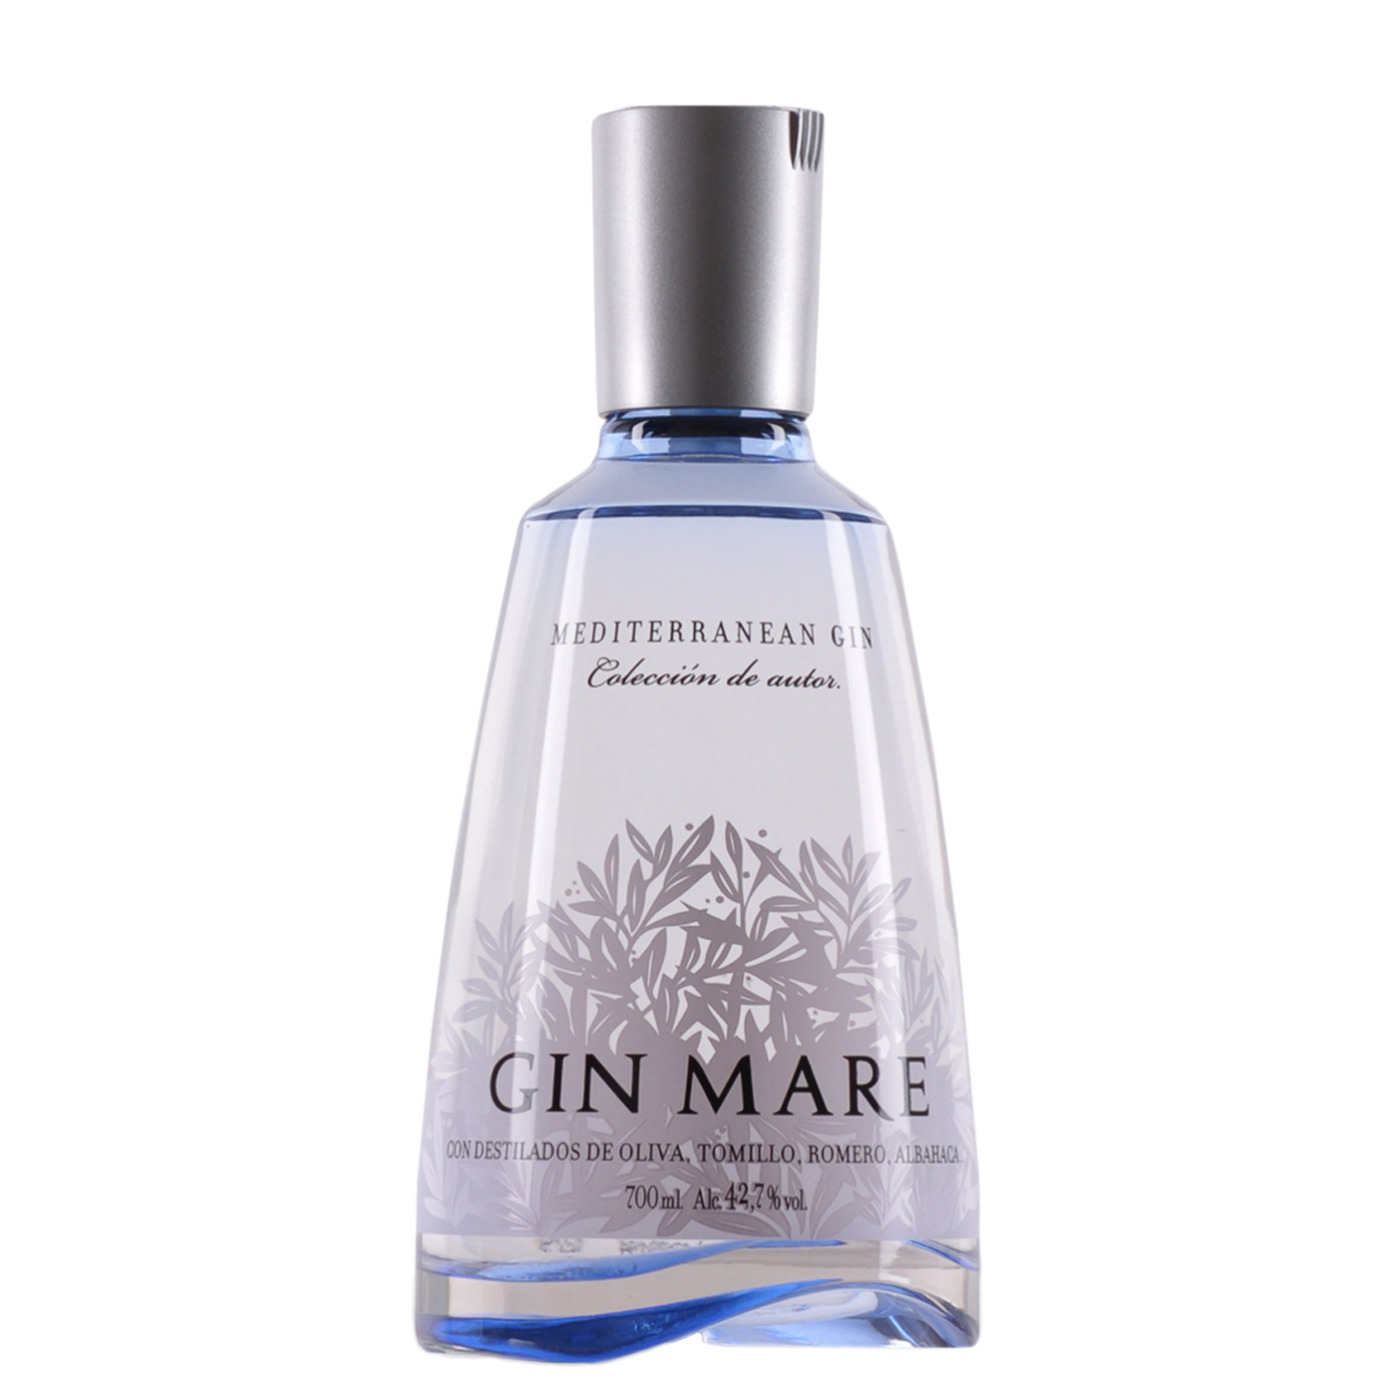 Gin Mare - Mediterranean Gin 70cl